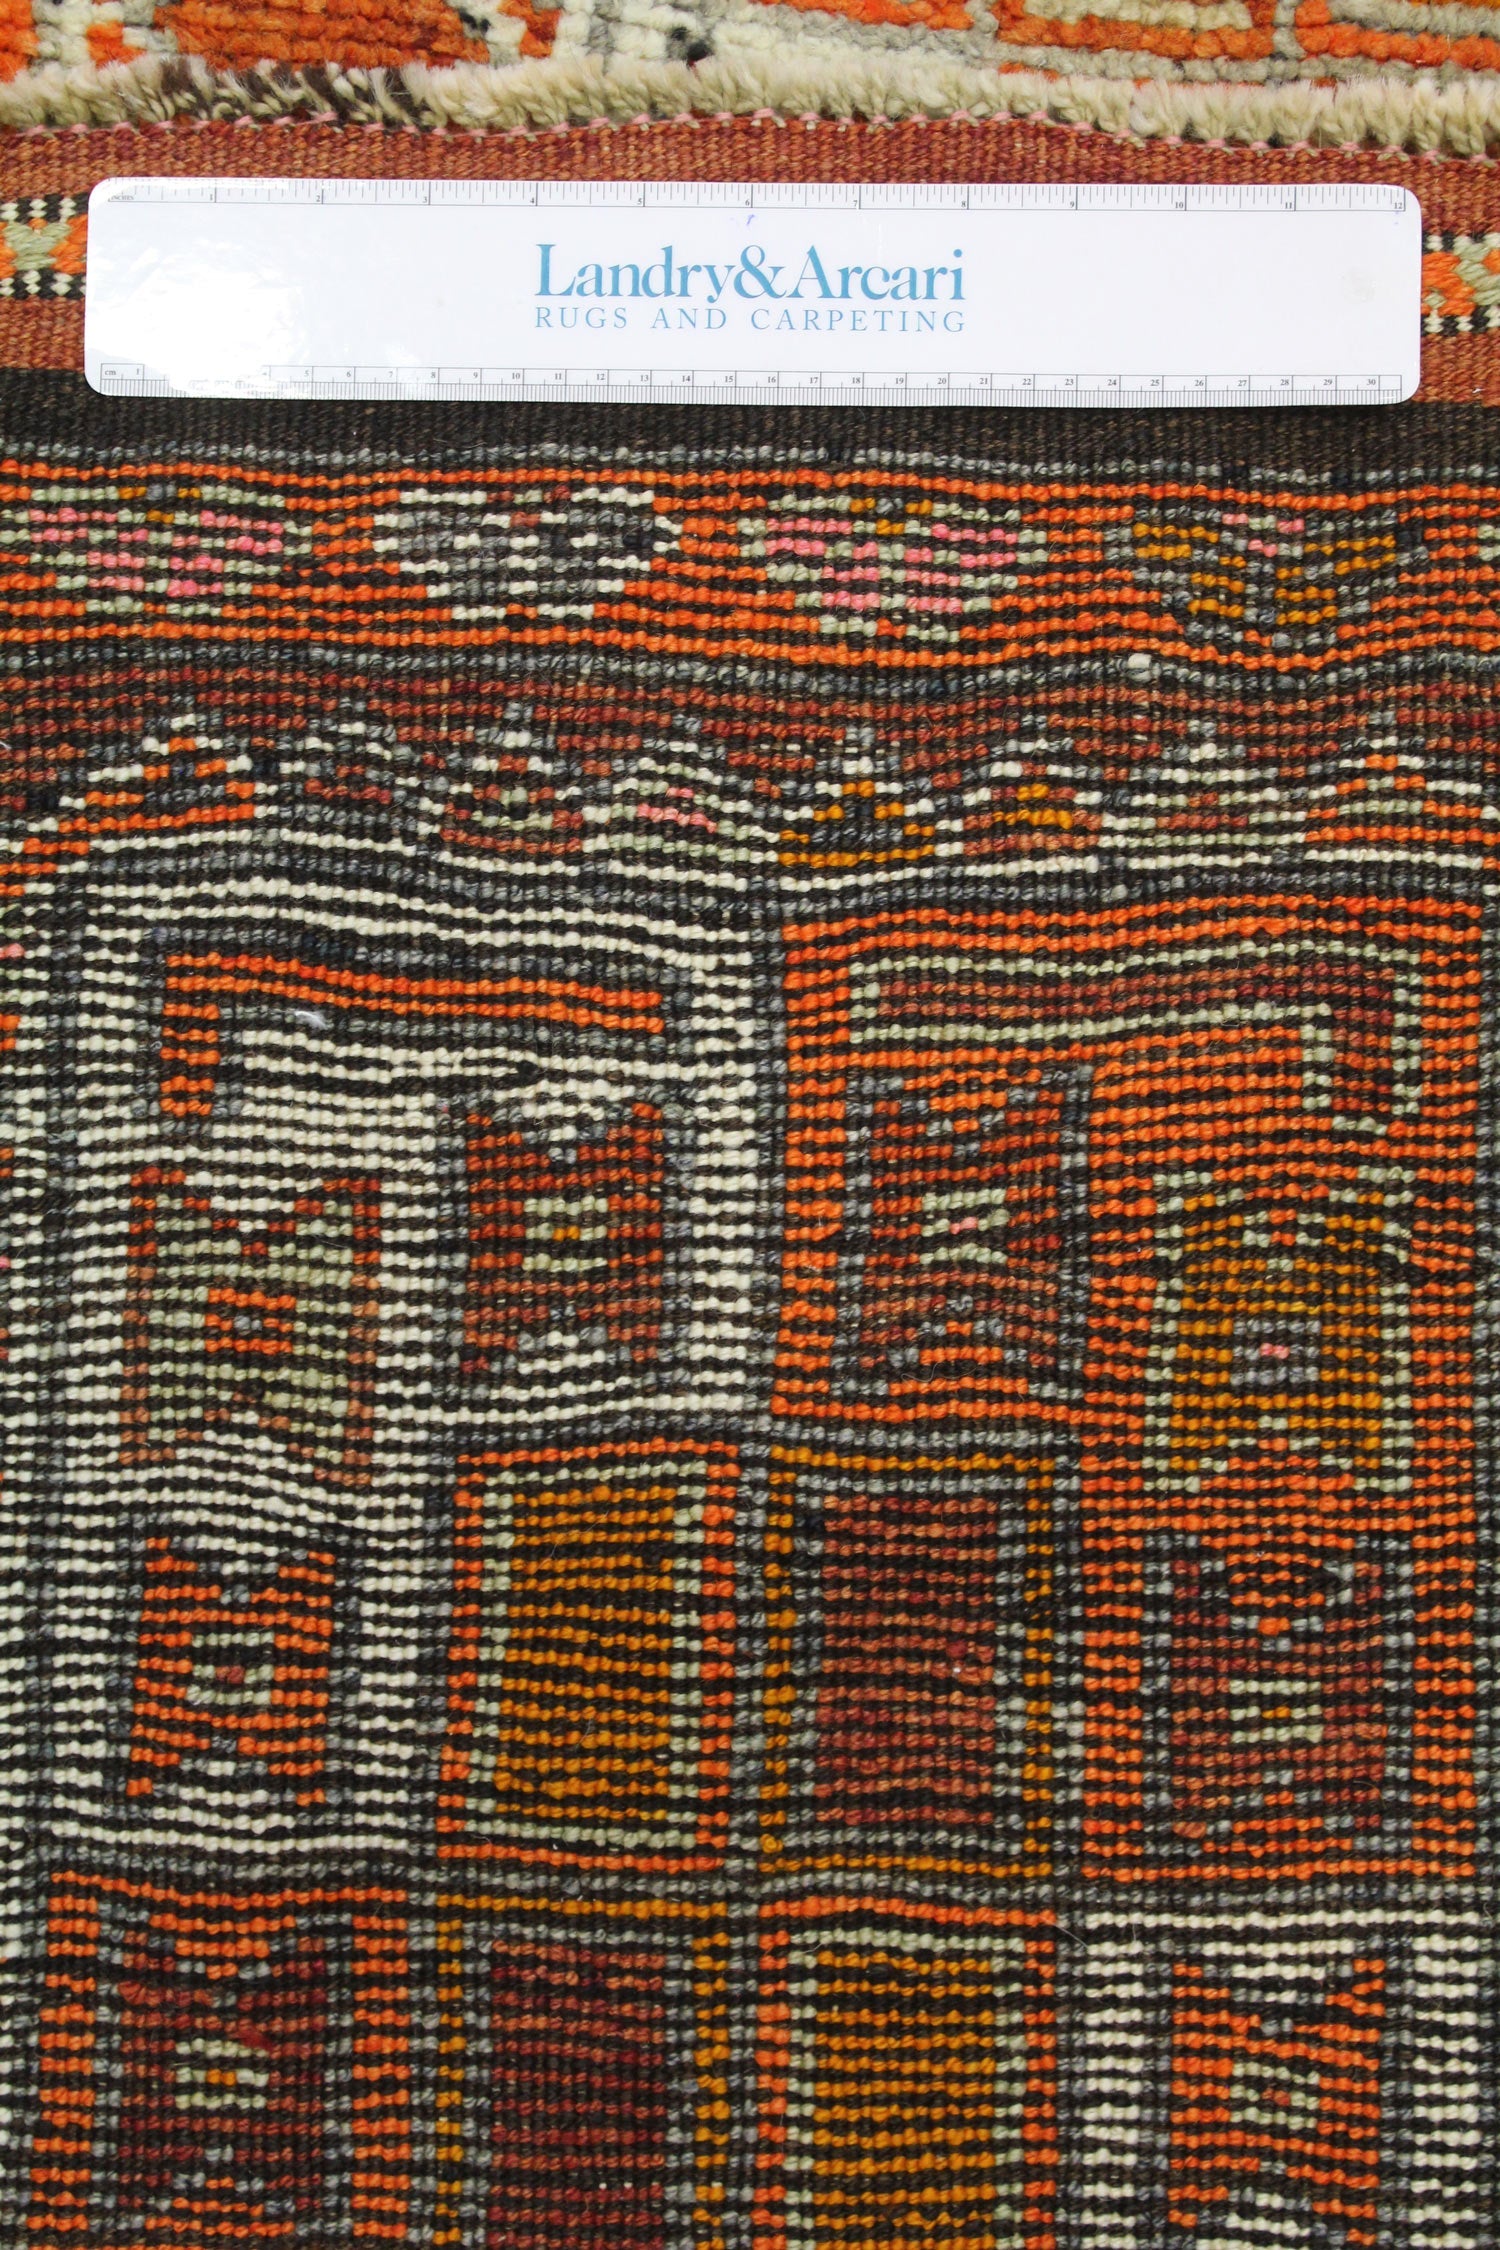 Vintage Herki Handwoven Tribal Rug, J64565